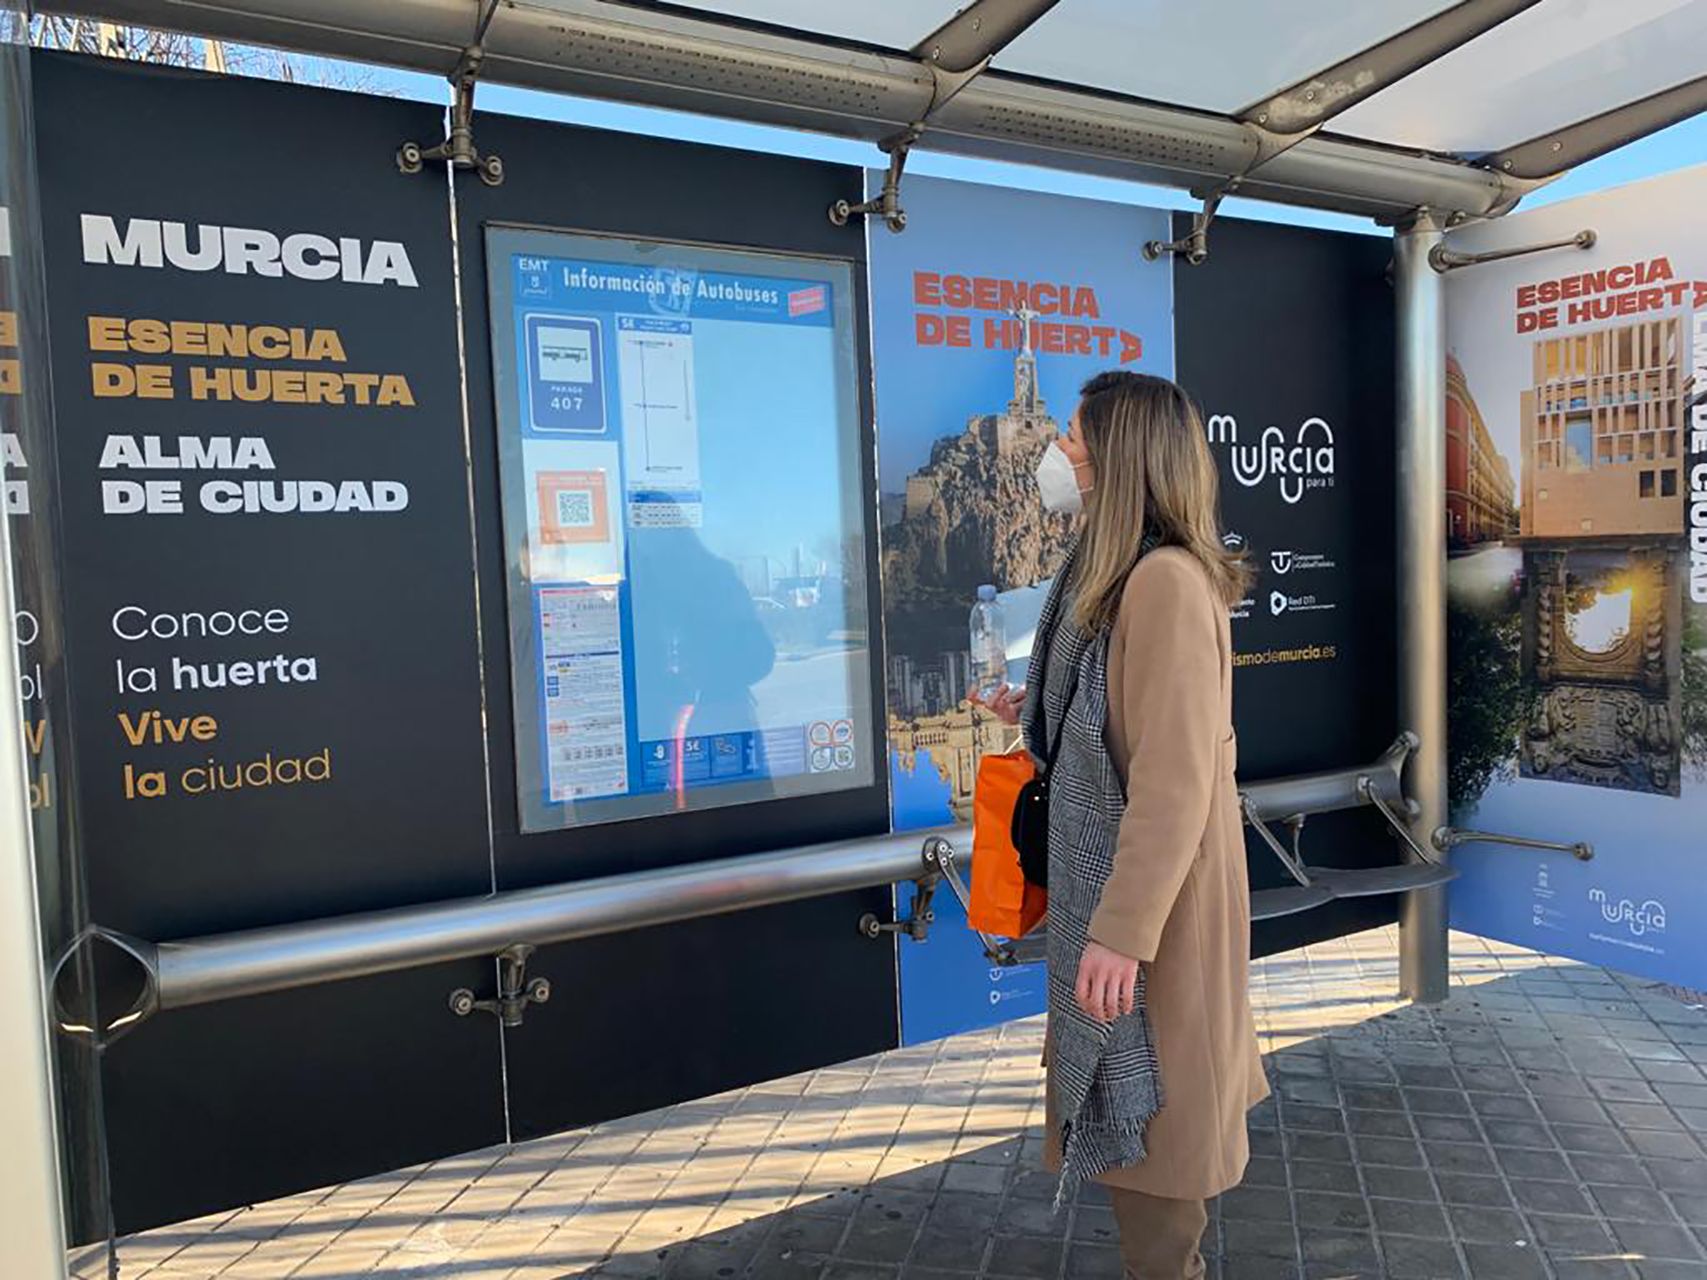 Murcia presenta en Fitur su nueva marca turística 'Esencia de huerta, alma de ciudad'